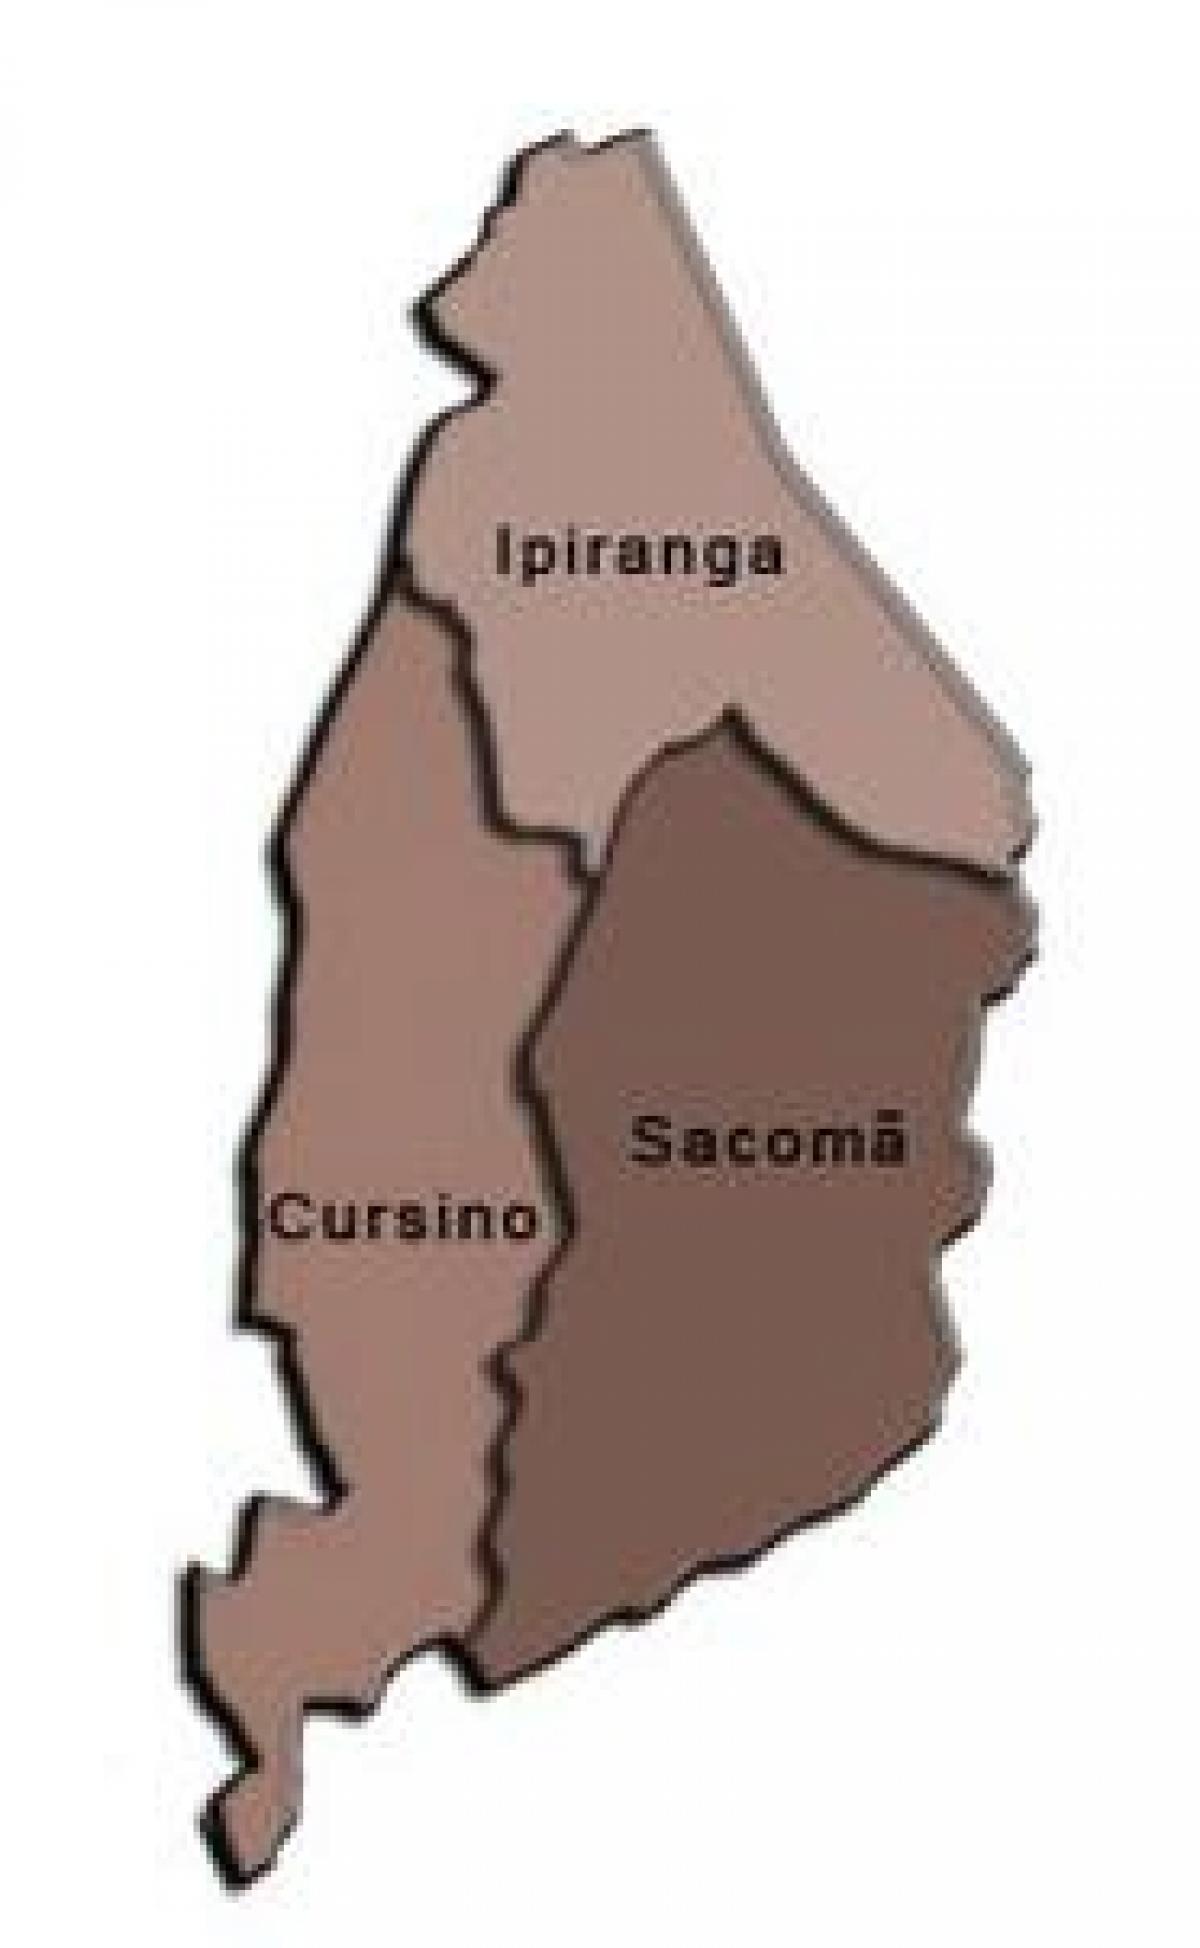 Kort over Ipiranga sub-præfekturet